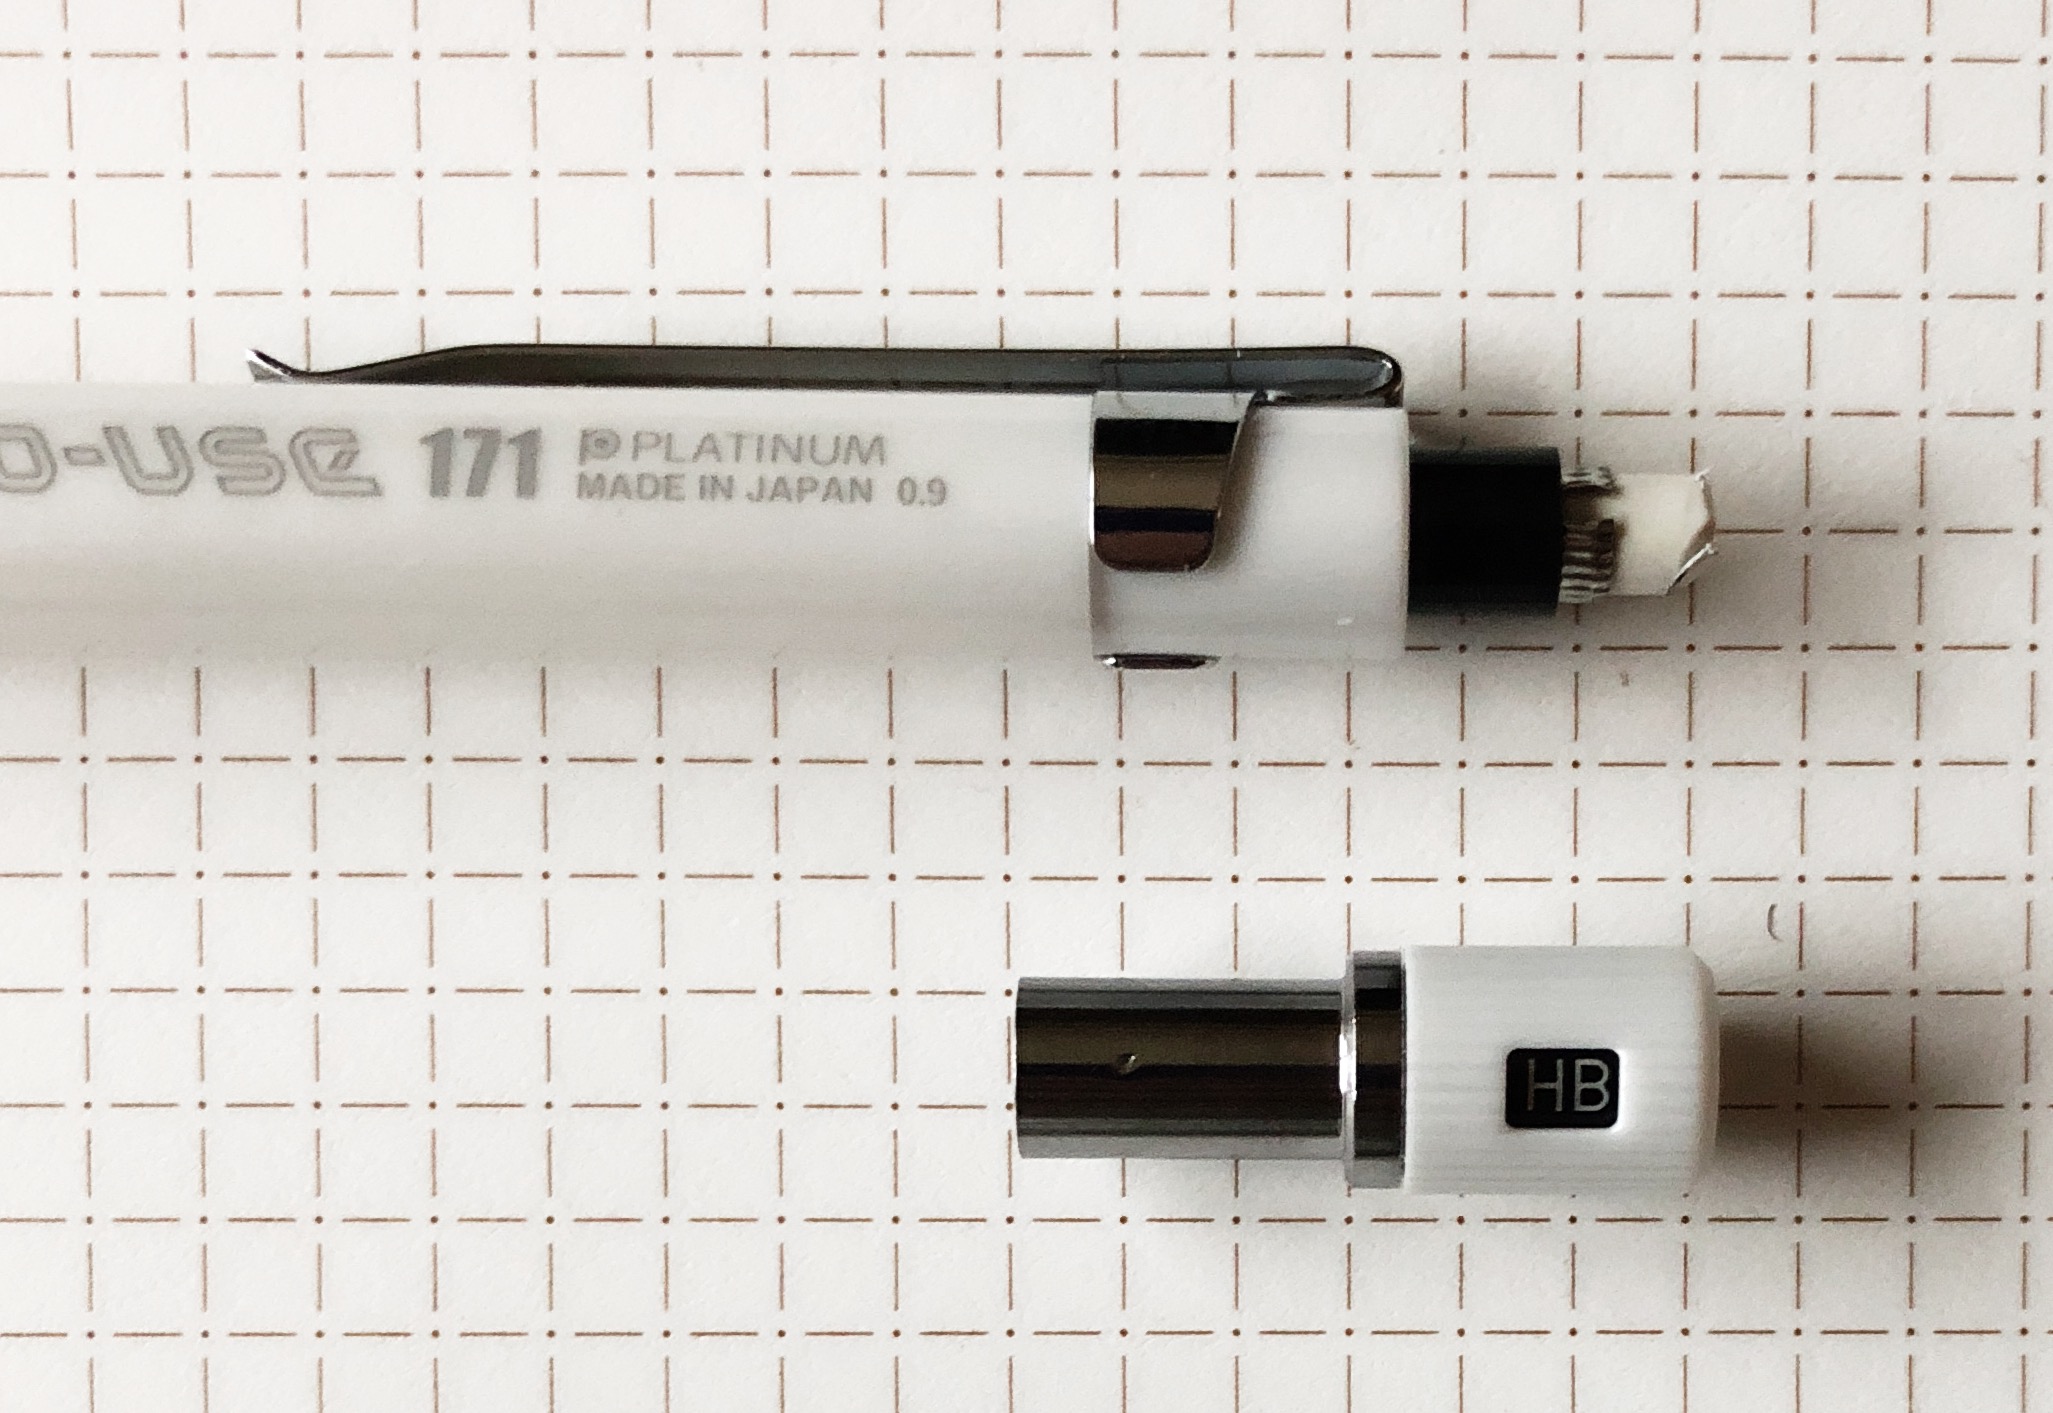 Eraser Review: Blackwing Soft Handheld Eraser - The Well-Appointed Desk